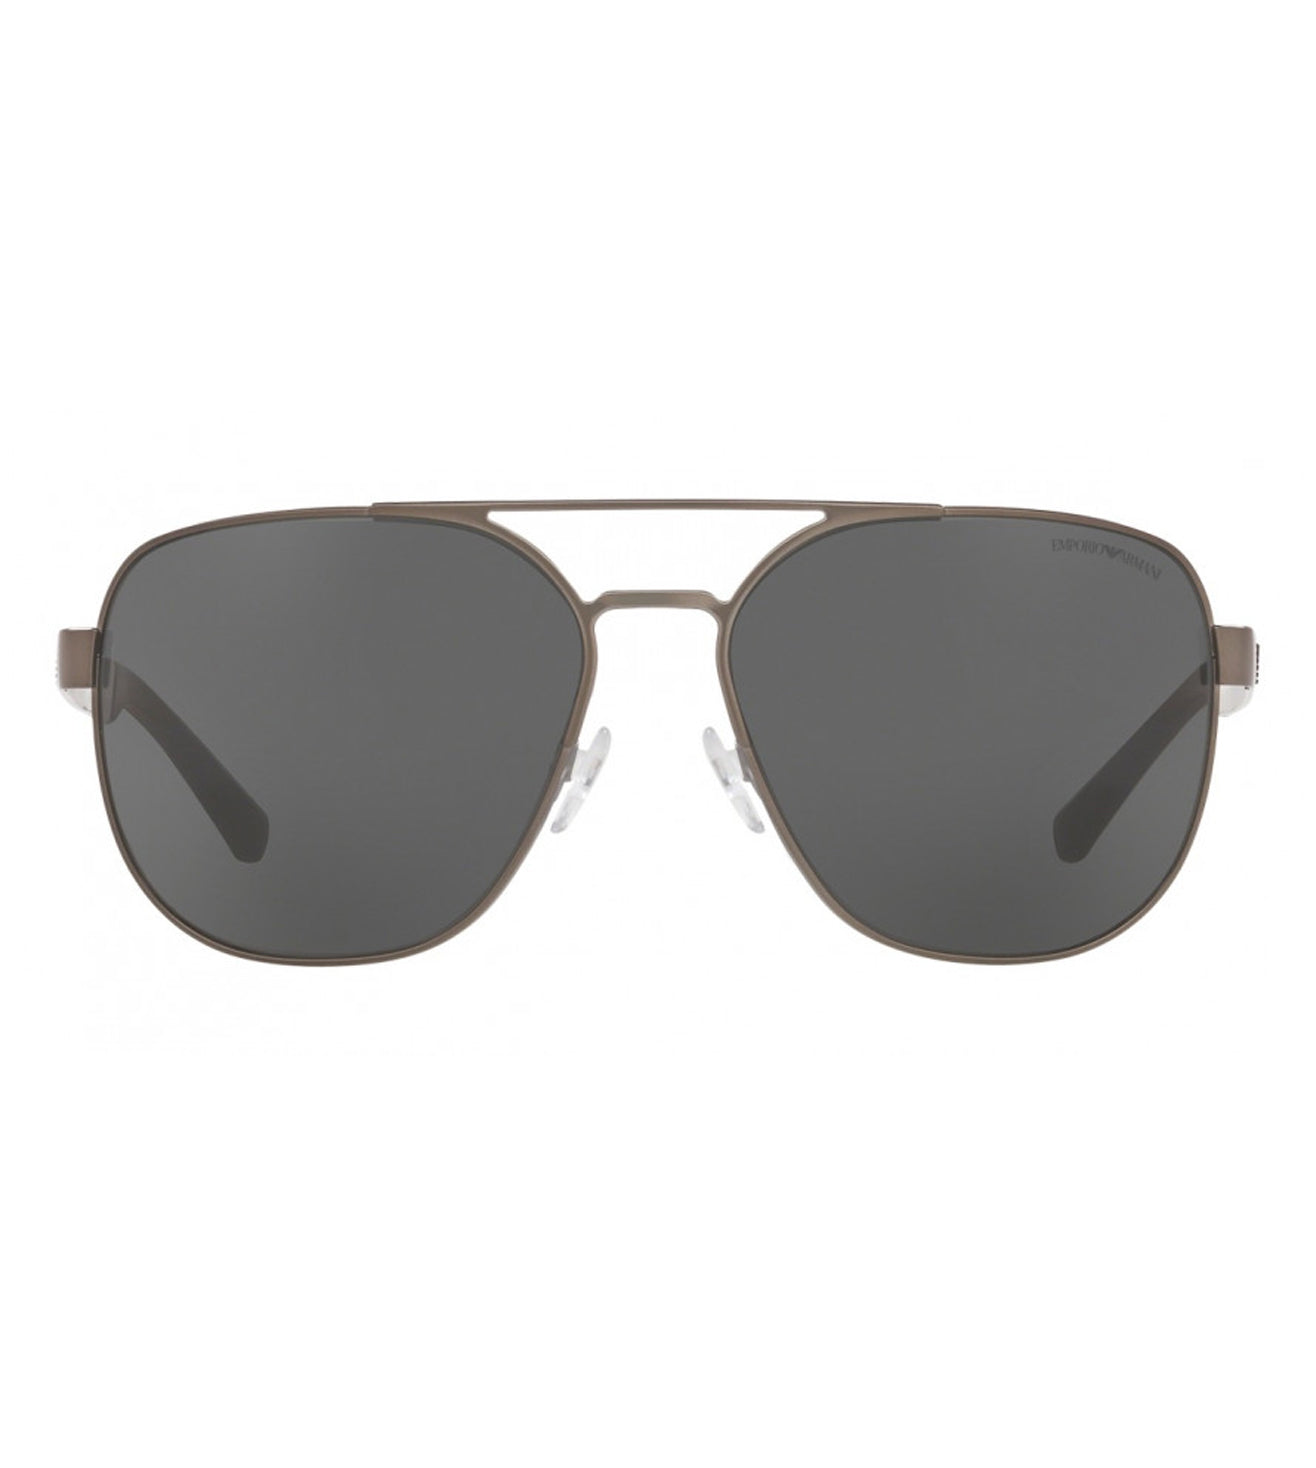 Emporio Armani Men's Aviator Sunglasses